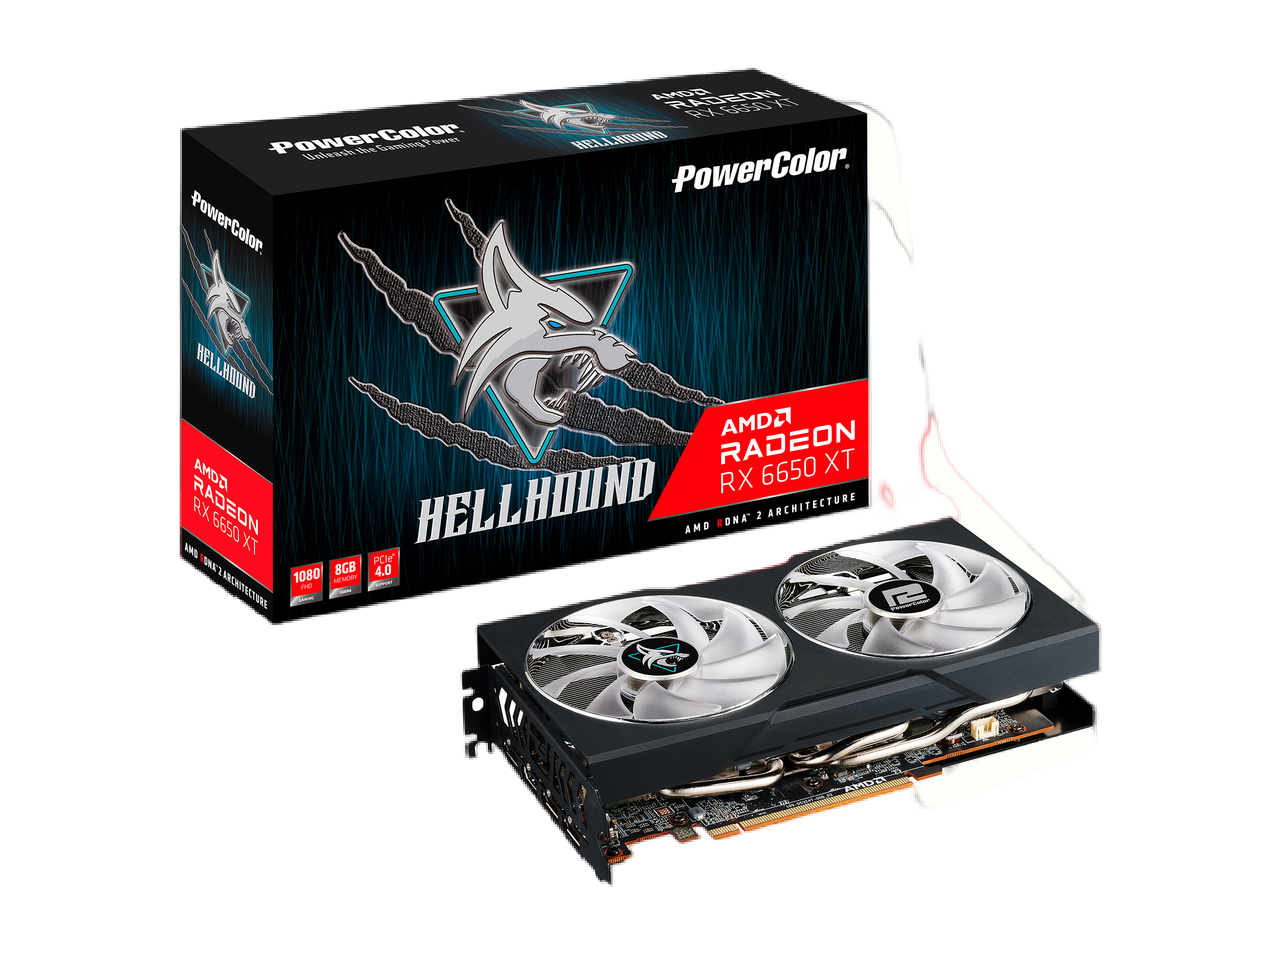 PowerColor Hellhound Radeon RX 6650 XT 8GB GDDR6 PCI Express 4.0 ATX Video Card AXRX 6650XT 8GBD6-3DHL/OC